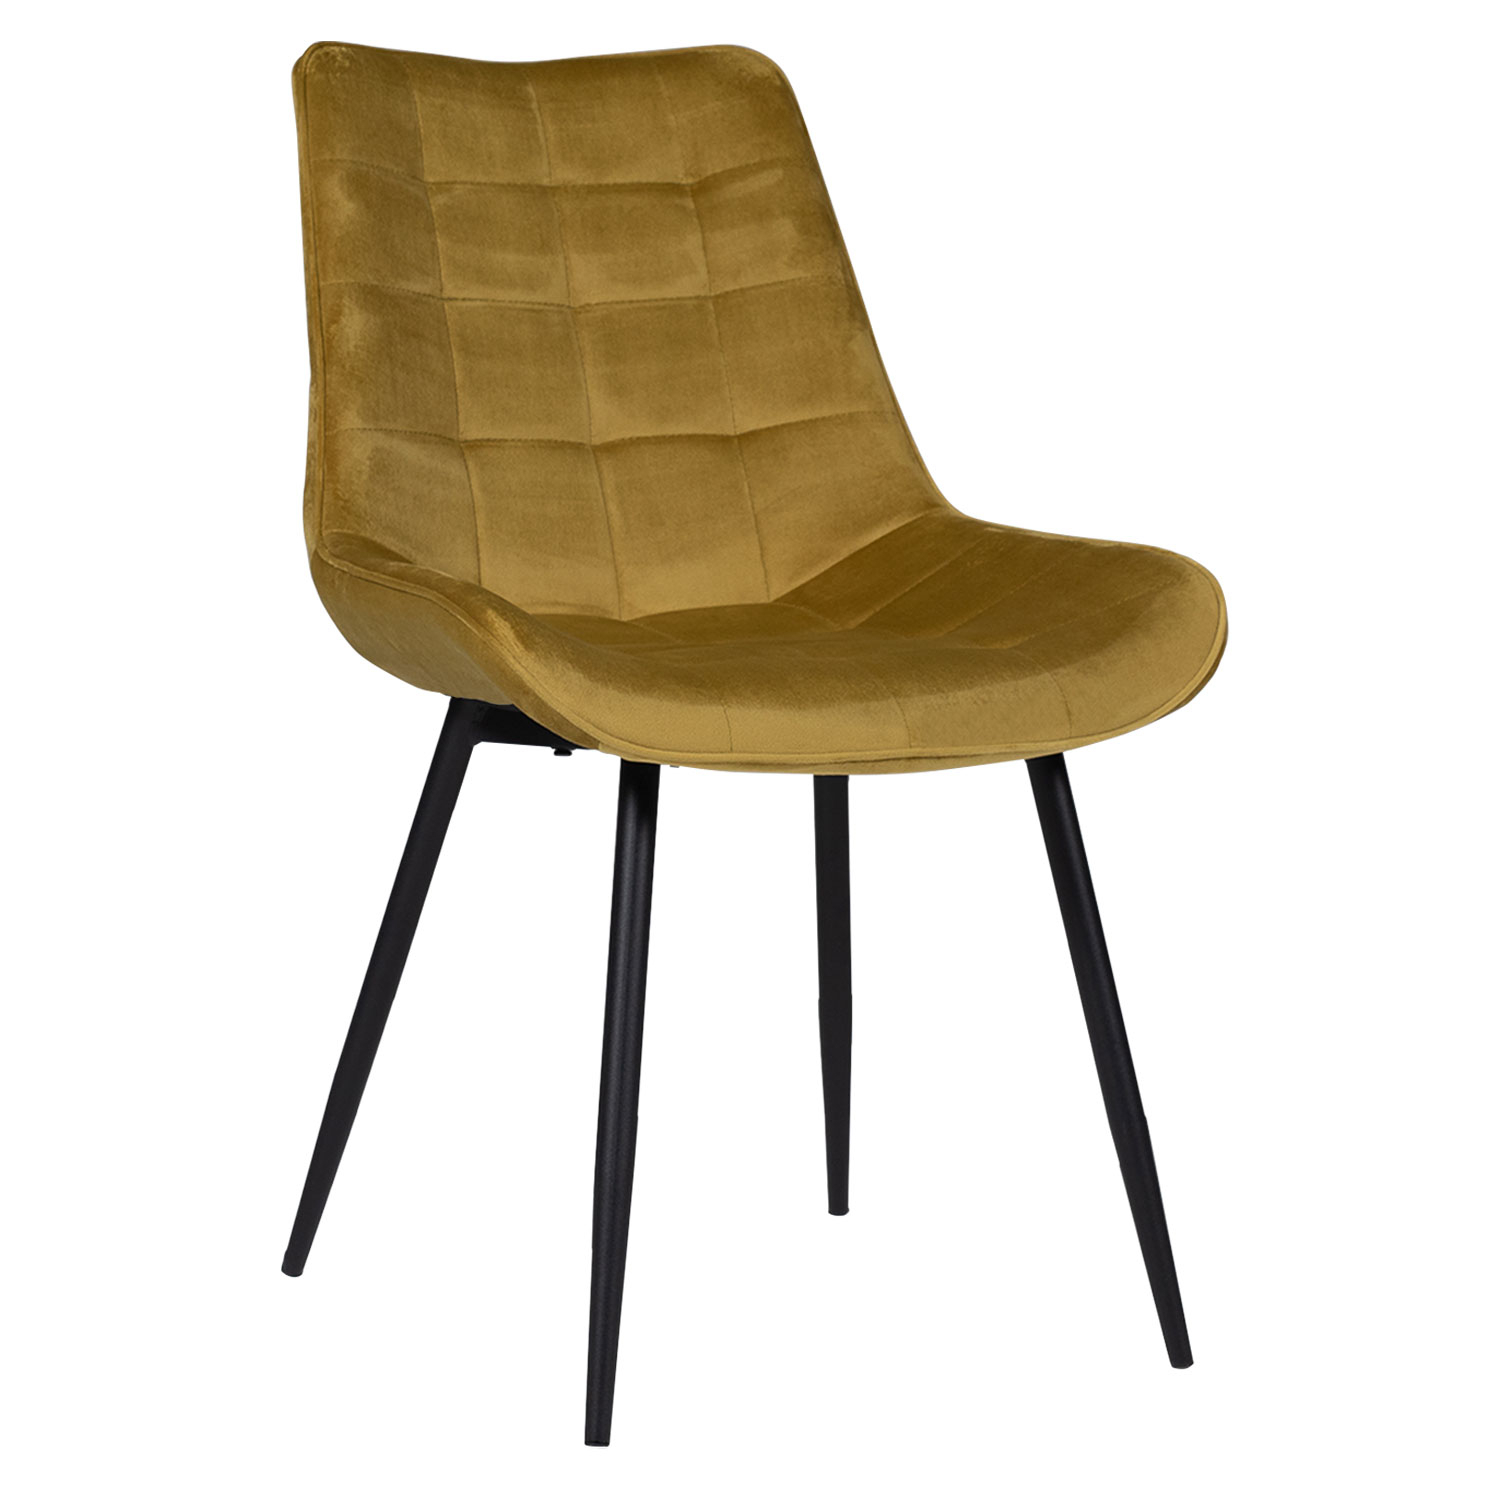 4 fundas elásticas plegables para sillas de comedor, fundas de asiento para  sillas de cocina, color mostaza, funda para silla